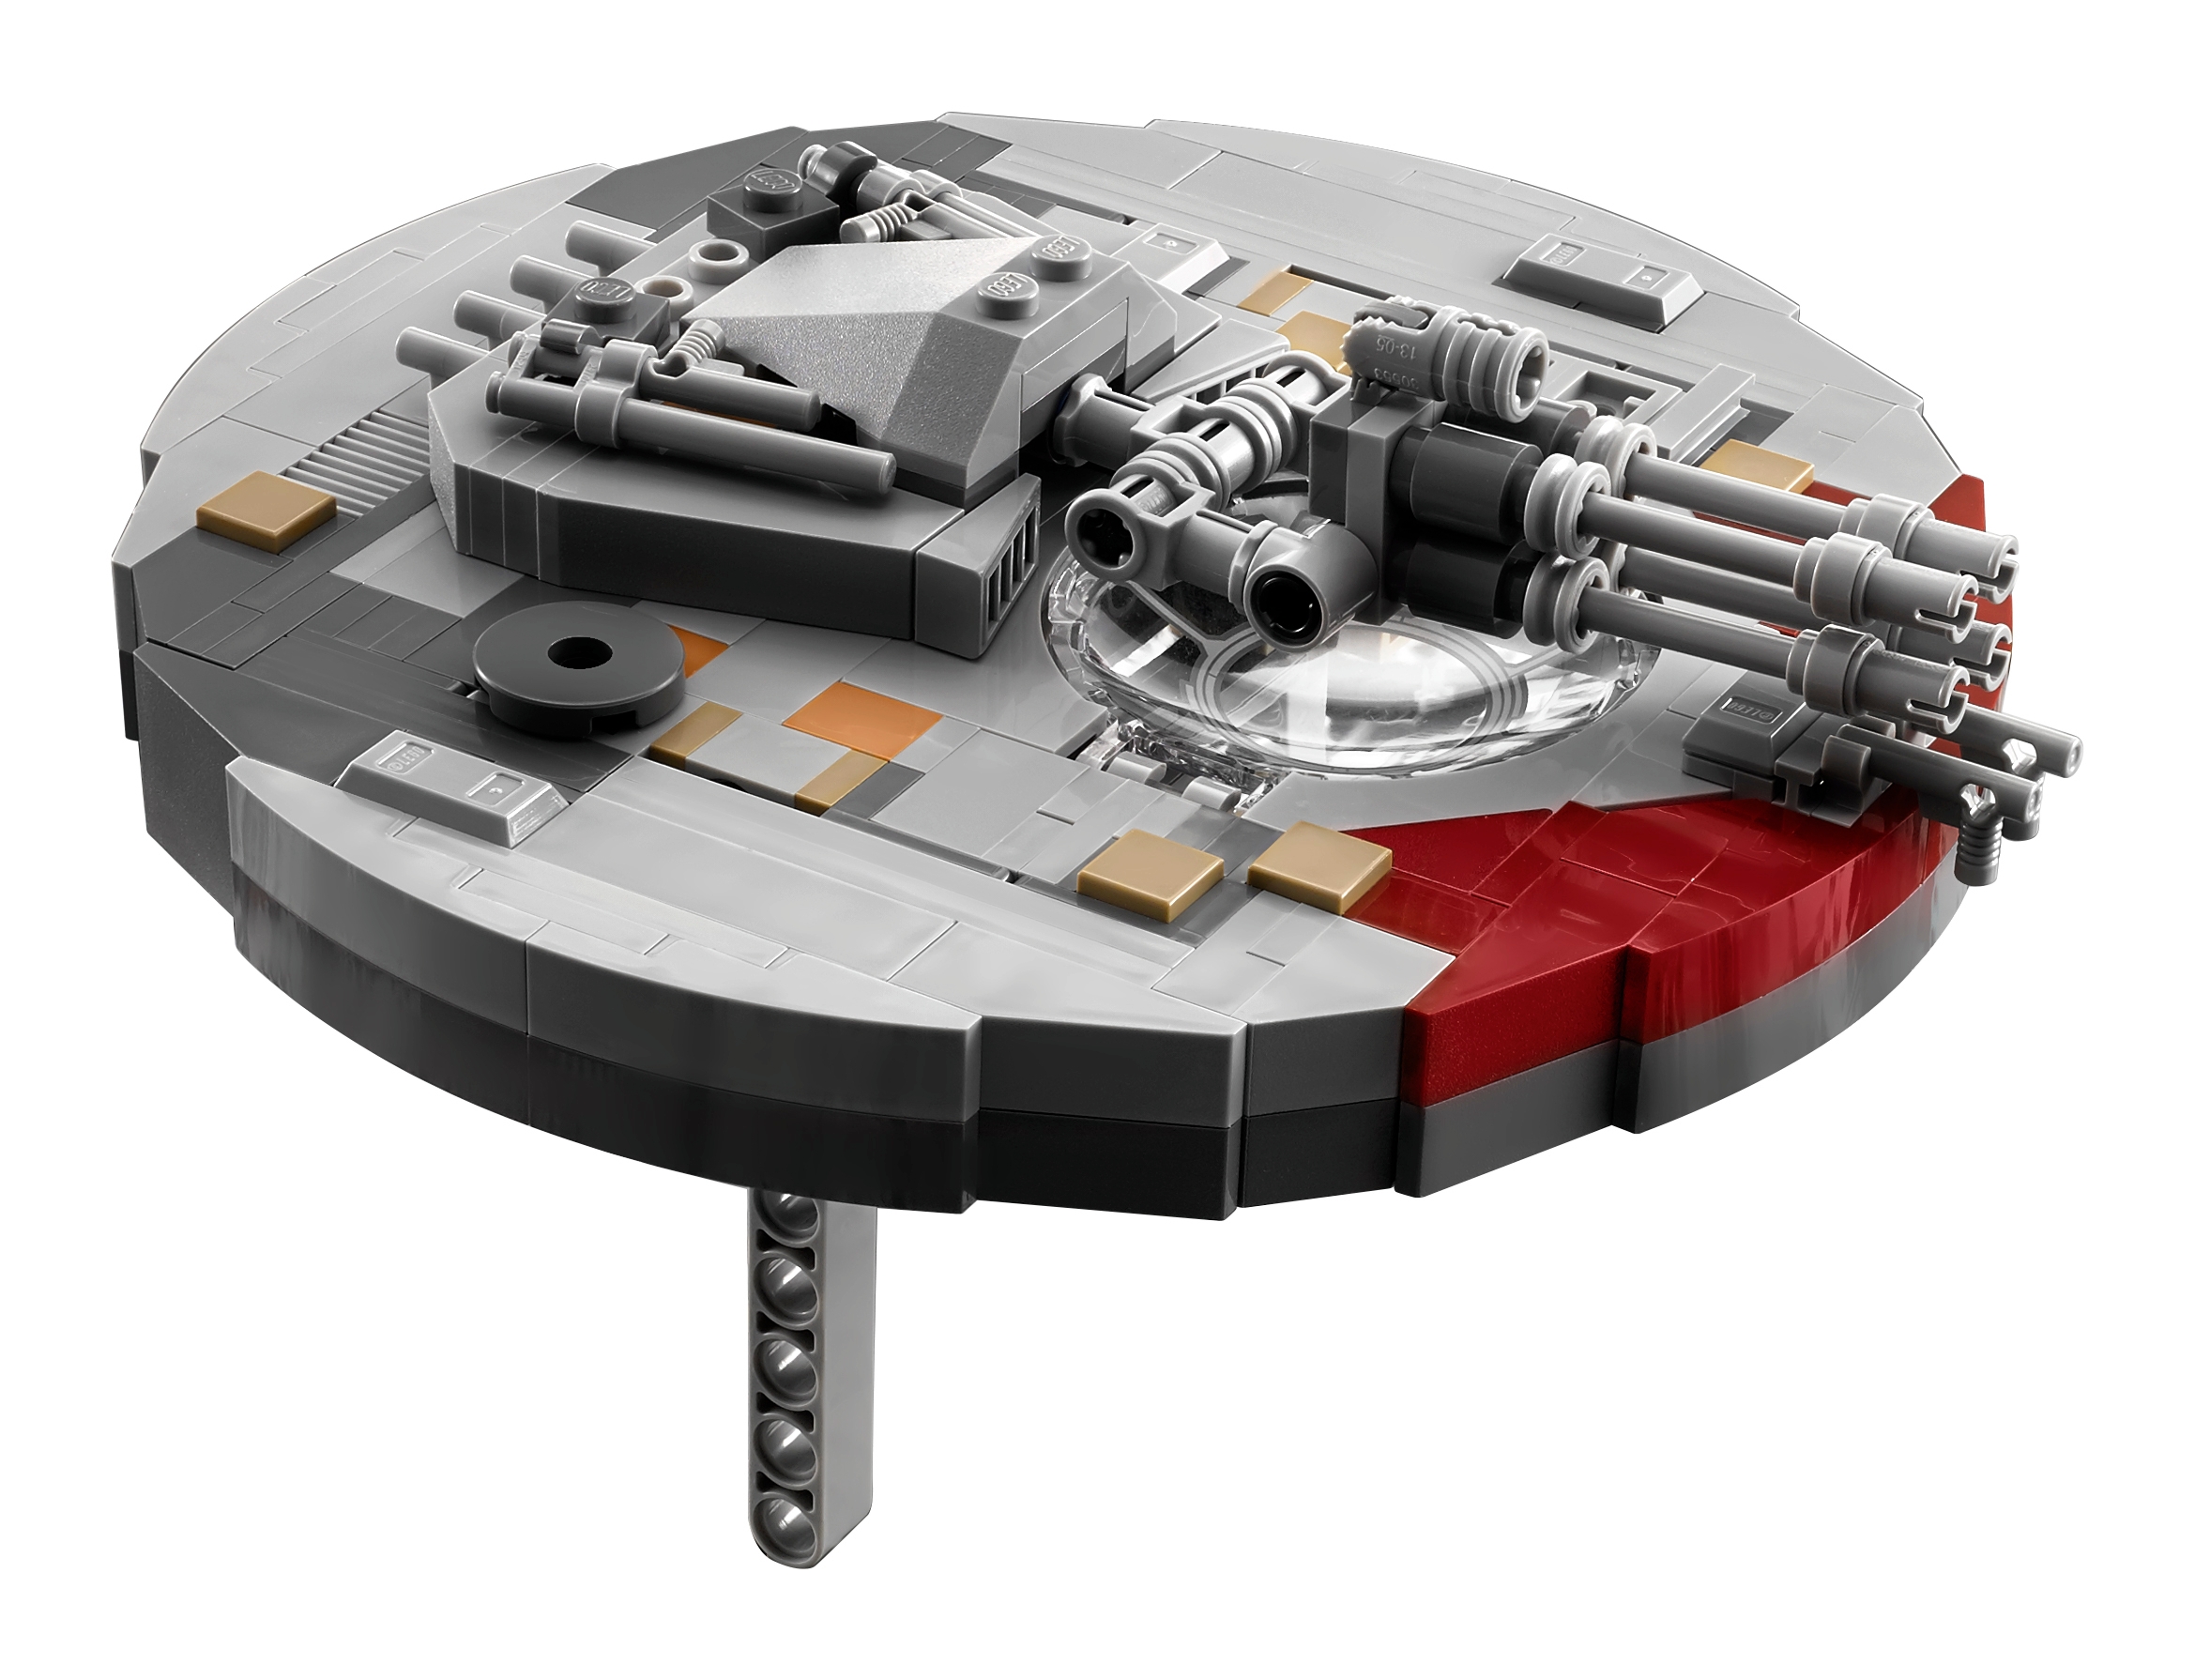 LEGO Star Wars UCS Millennium Falcon tombe au prix le plus bas depuis 2022